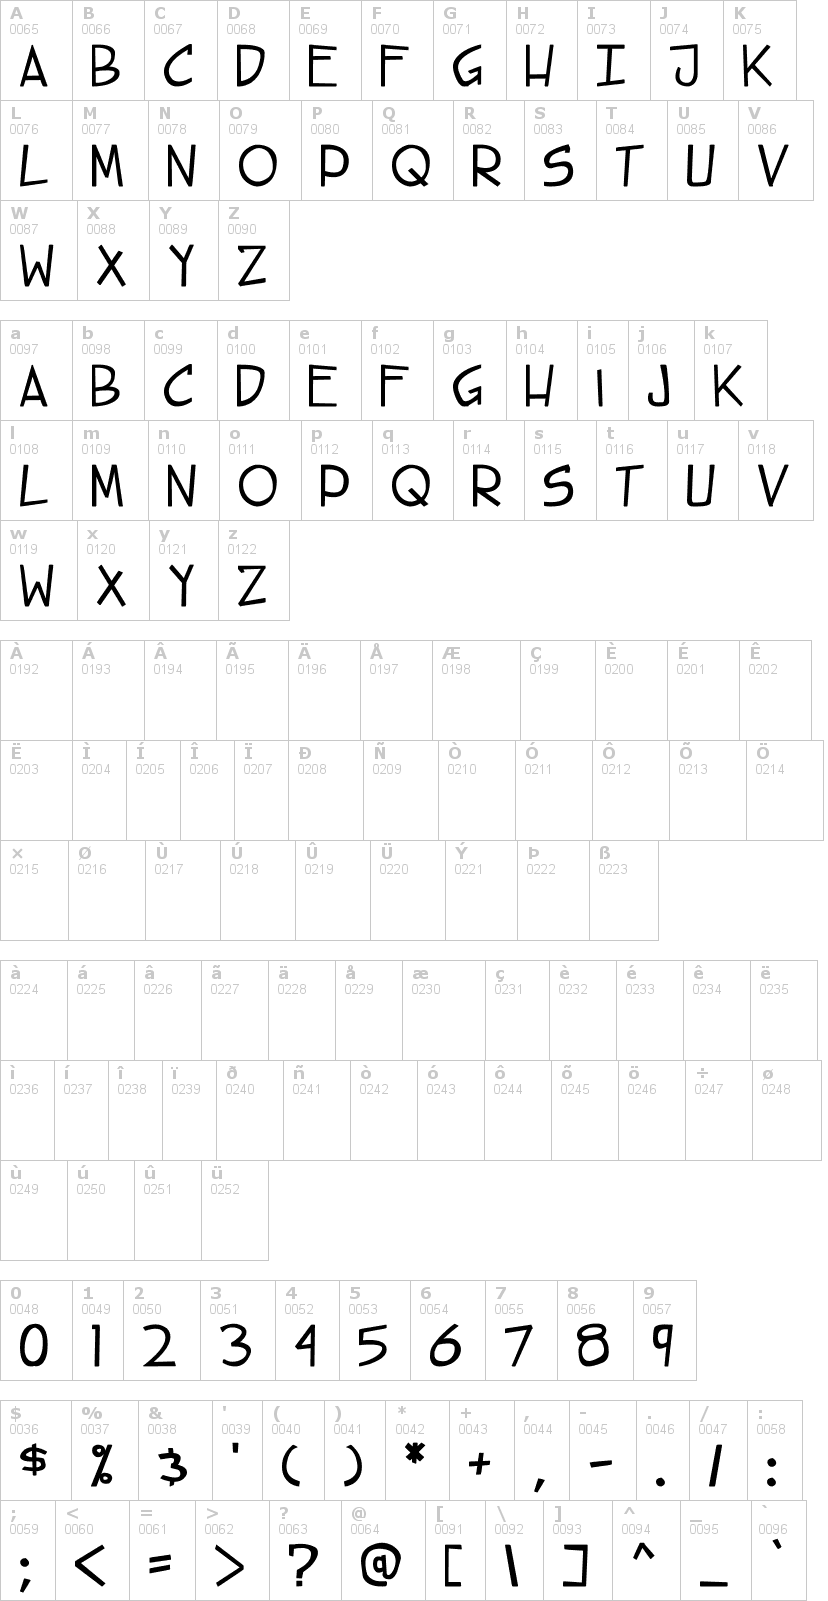 Lettere dell'alfabeto del font steet-cred con le quali è possibile realizzare adesivi prespaziati